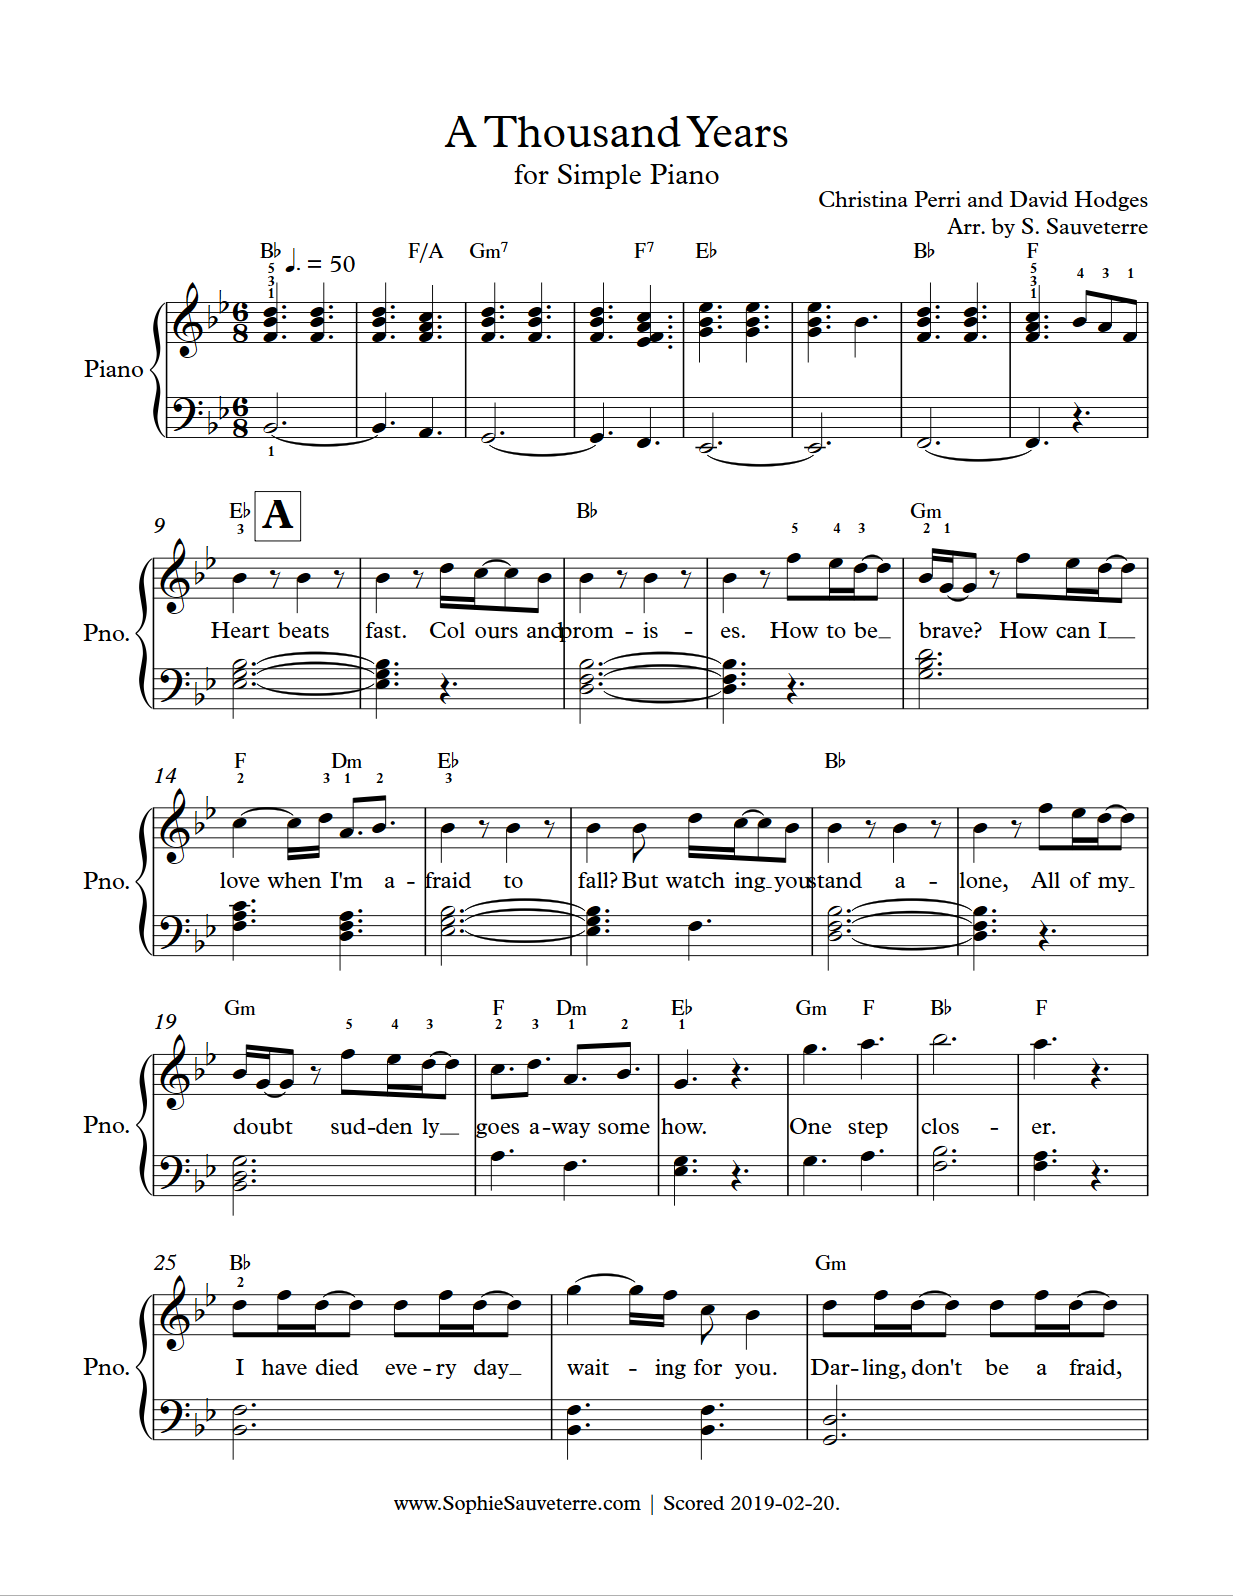 satélite Fielmente T Christina Perri – A Thousand Years – Simple Piano Sheet Music Arrangement –  Sophie Sauveterre